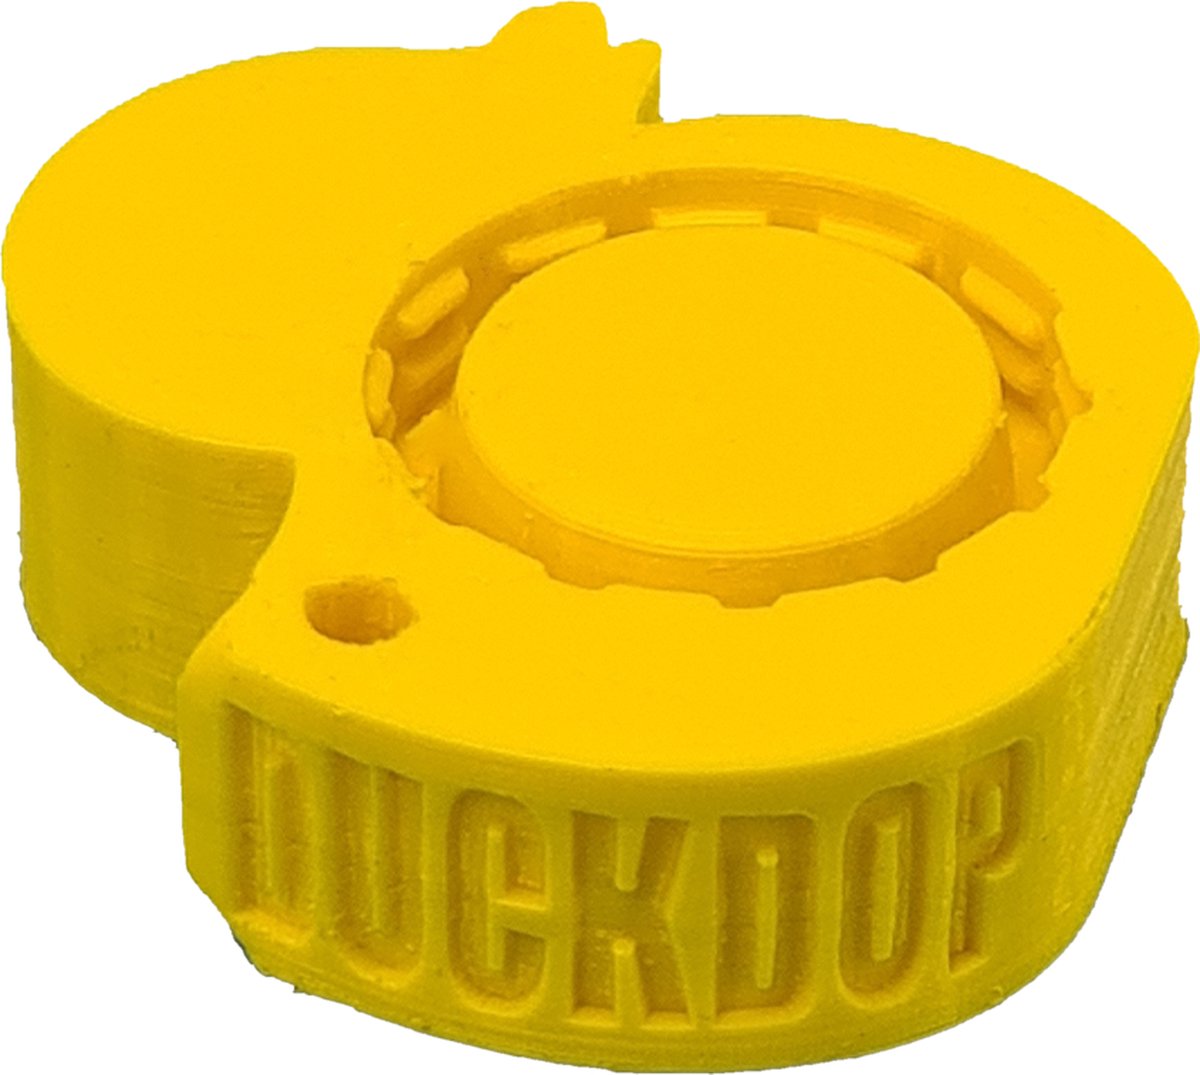 DuckDop® Original - Geel - Festival dop - Universele Flessendop - Inclusief grote sleutelhanger - Sta nooit meer in je eendje